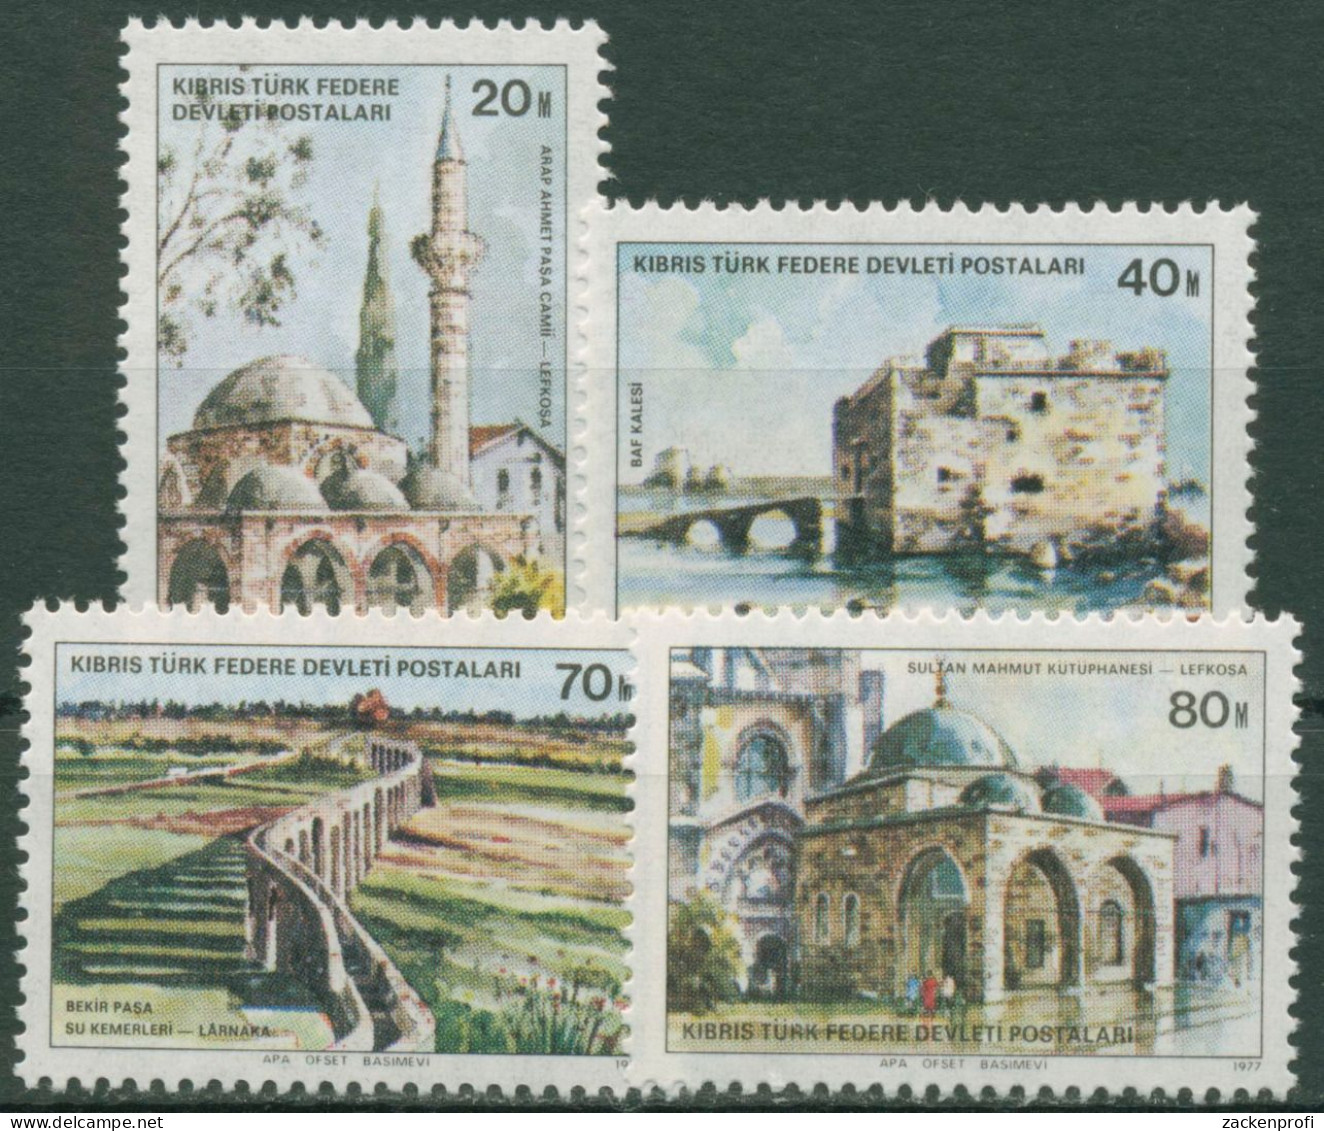 Türkisch-Zypern 1977 Türkische Baudenkmäler 46/49 Postfrisch - Nuovi